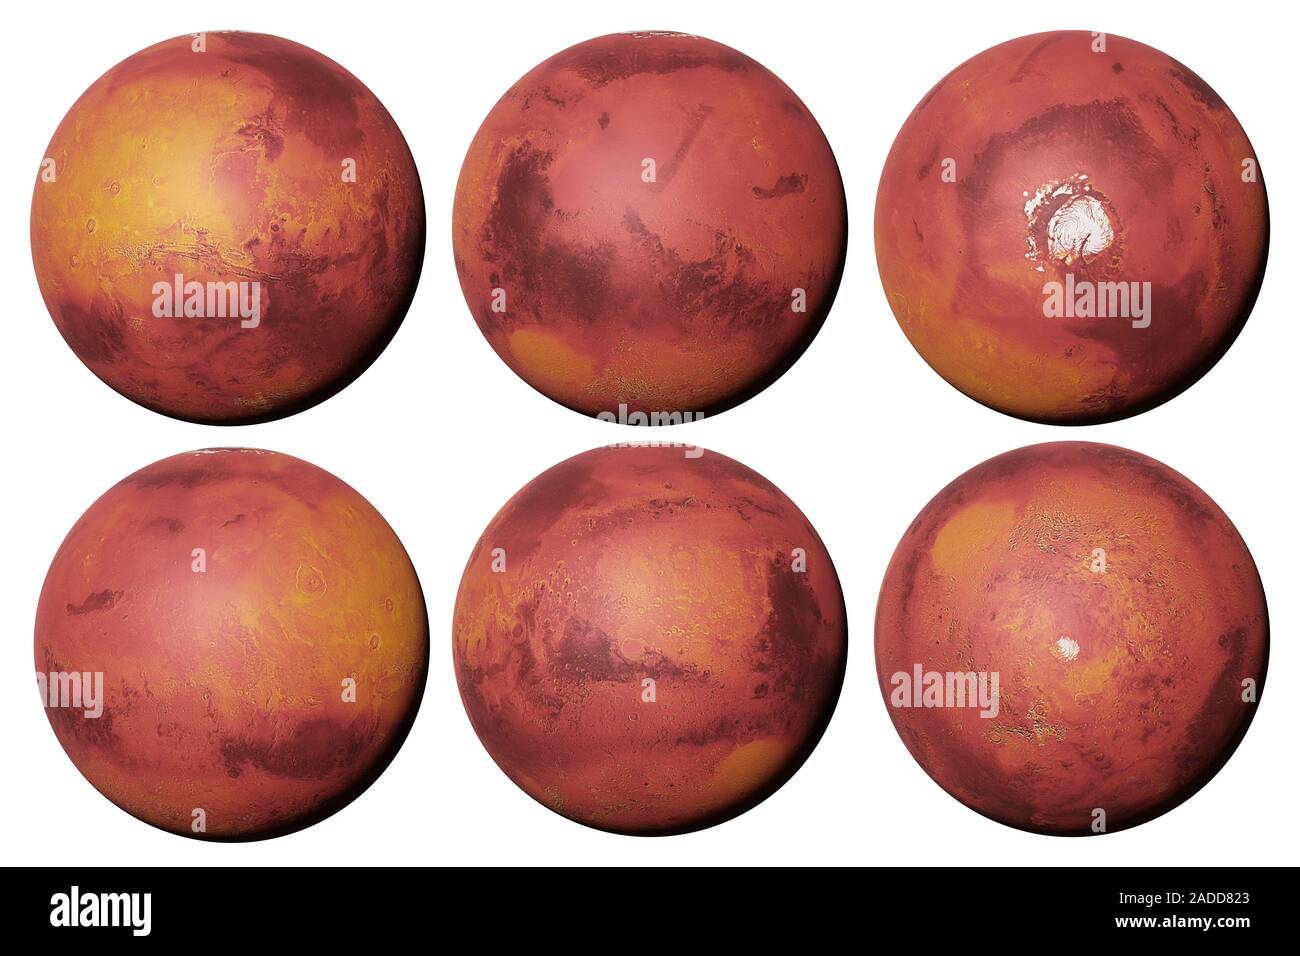 Planète Mars, la planète rouge de tous les côtés isolé sur fond blanc Banque D'Images